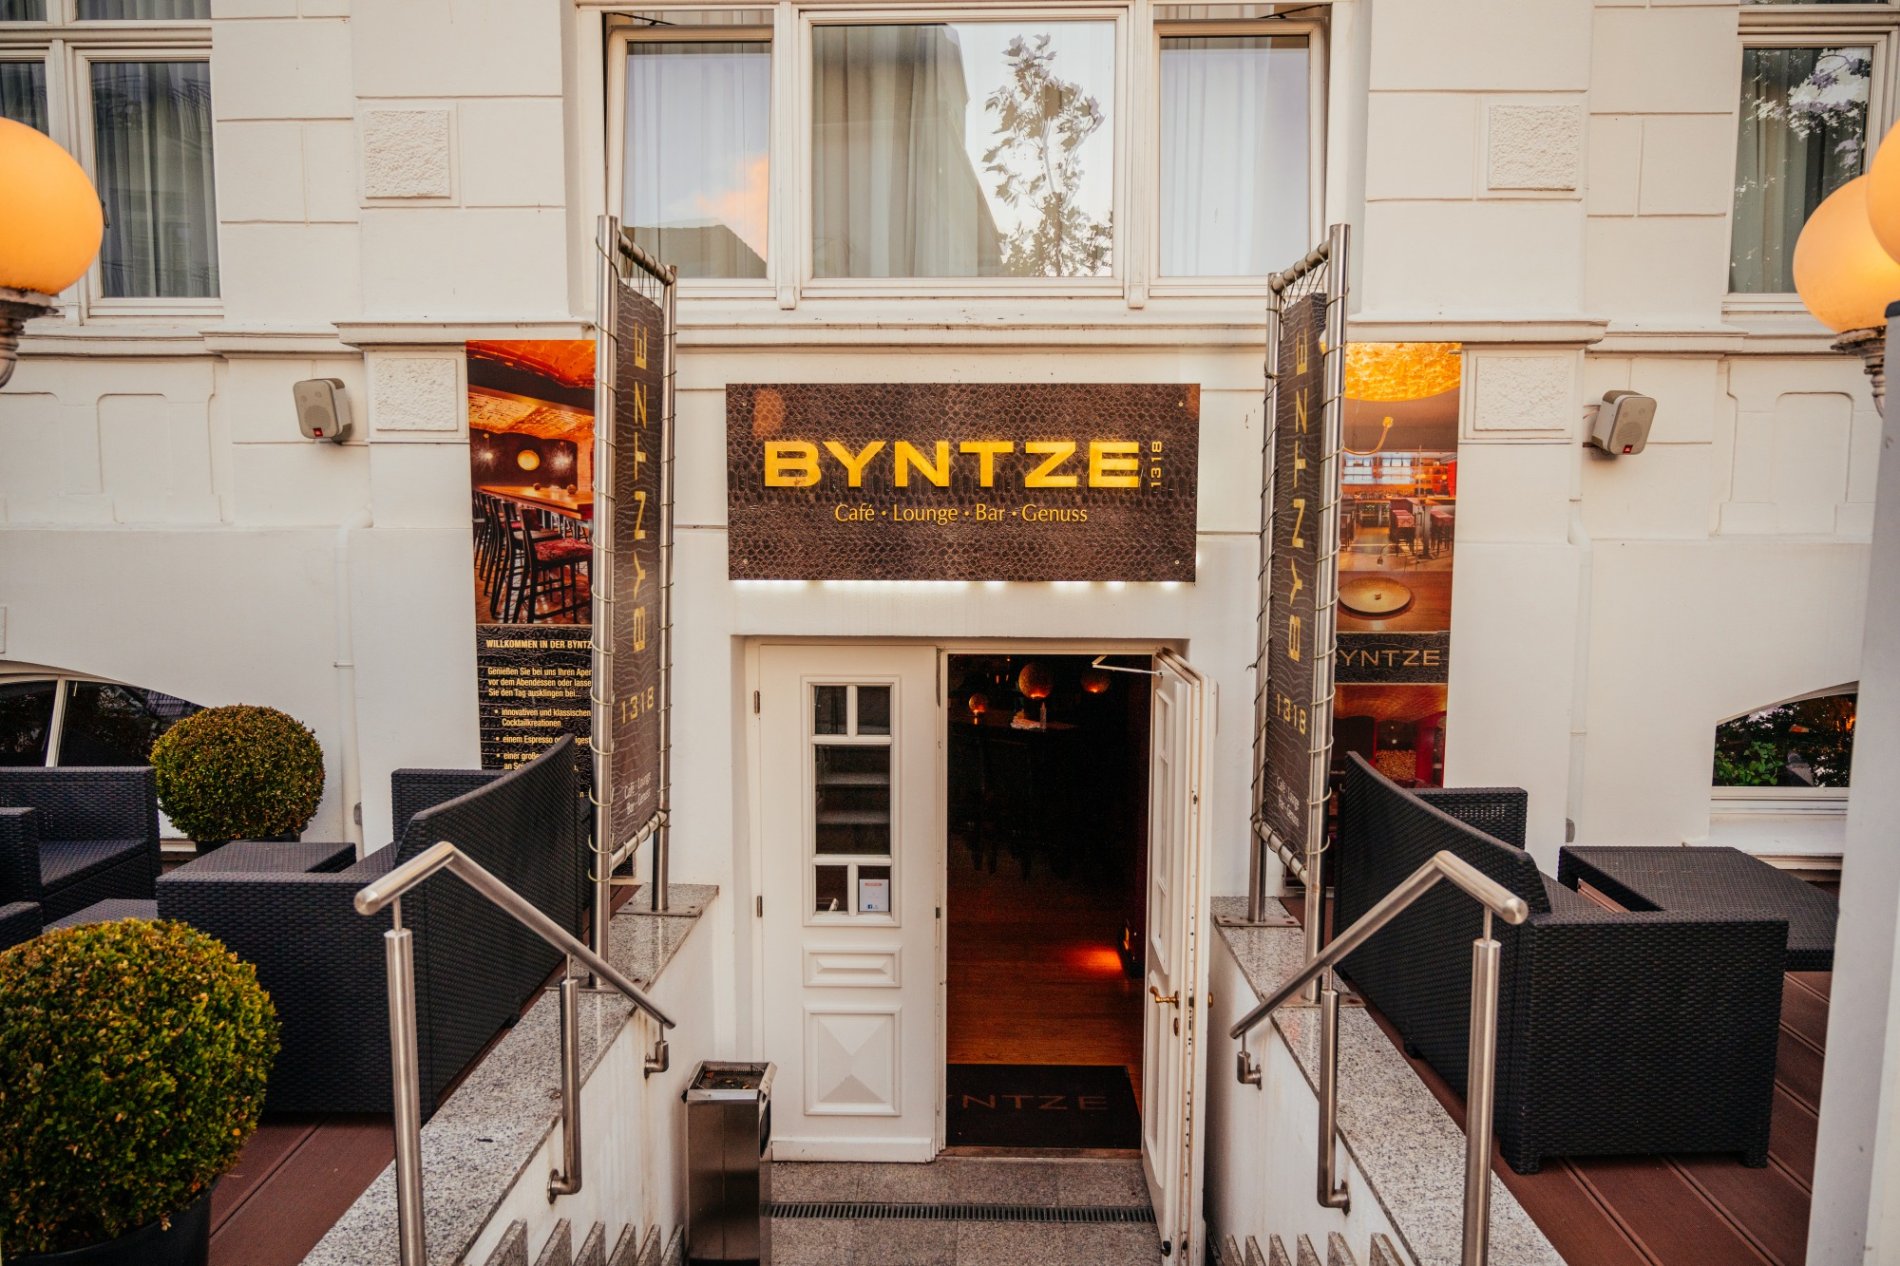 Eingang Bar Byntze